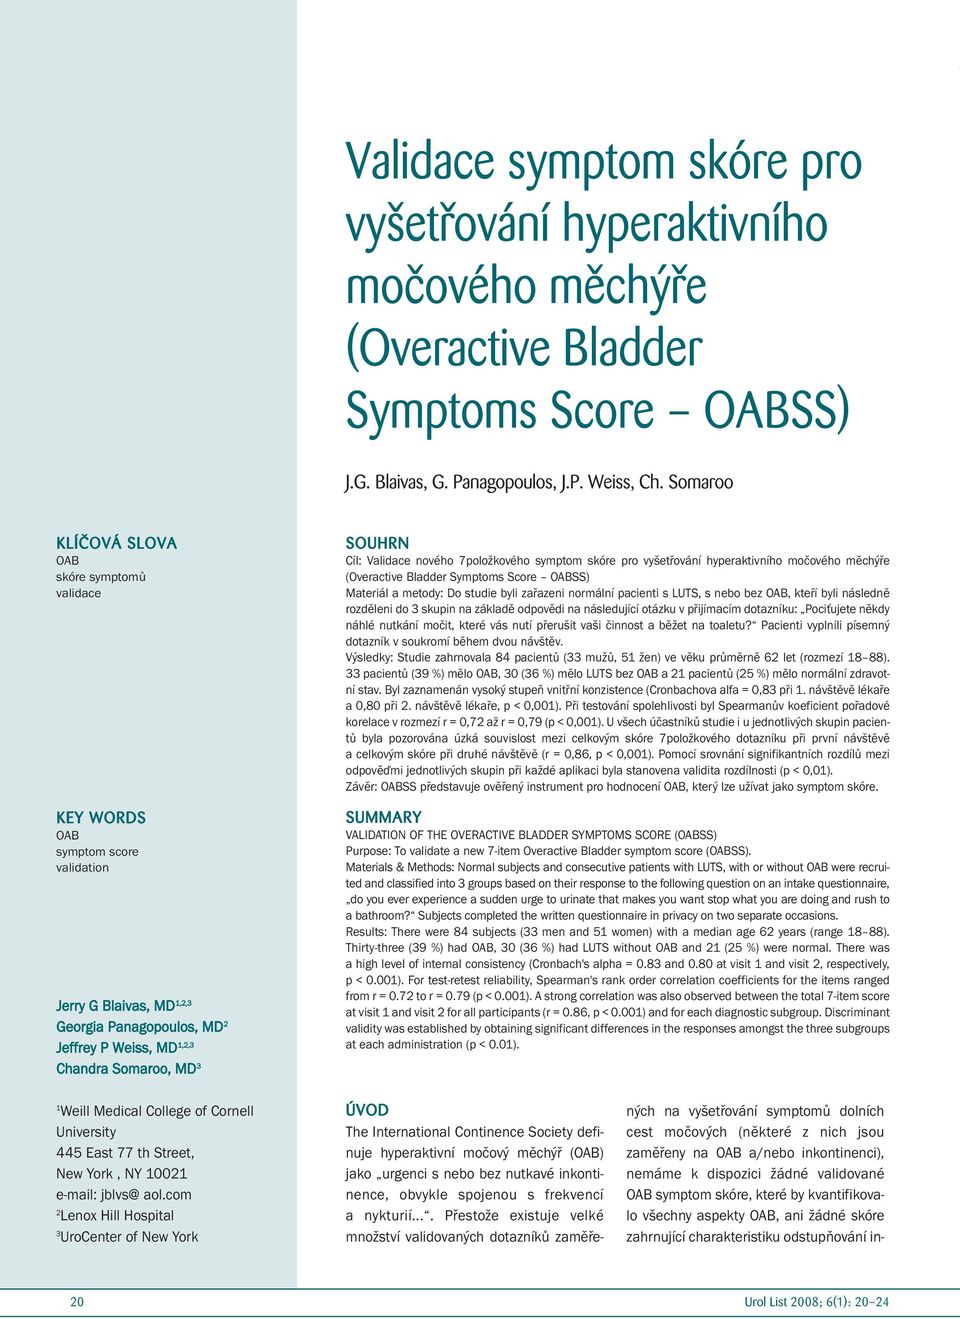 Cíl: Validace nového 7položkového symptom skóre pro vyšetřování hyperaktivního močového měchýře (Overactive Bladder Symptoms Score OABSS) Materiál a metody: Do studie byli zařazeni normální pacienti